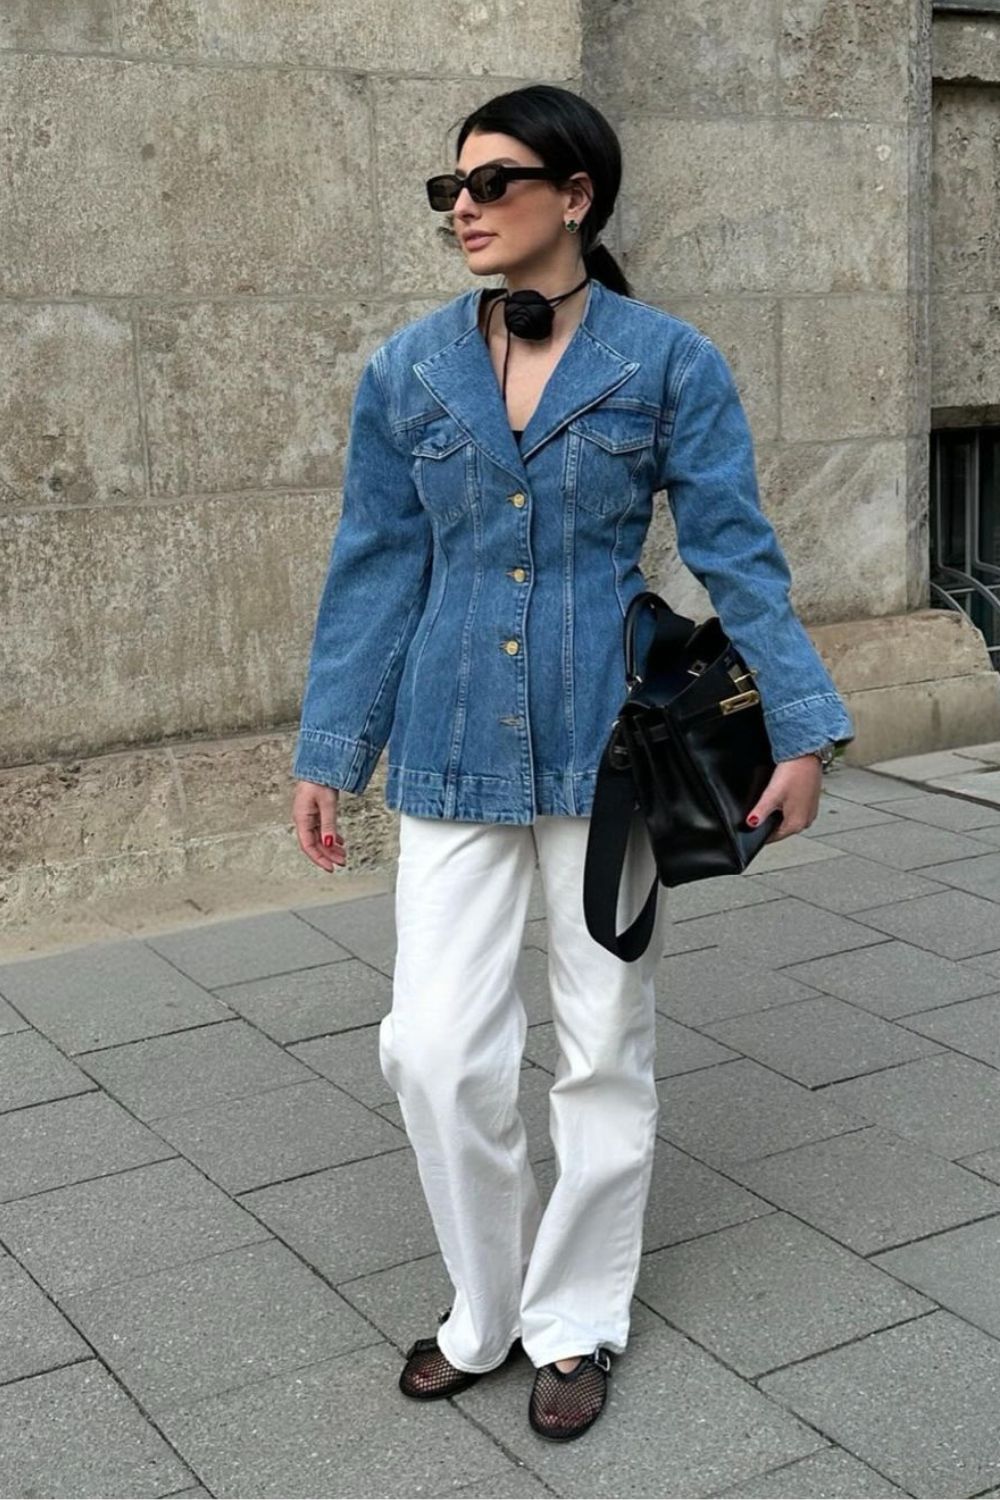 Jaqueta jeans acinturada e calça de alfaiataria branca com sapatilha arrastão